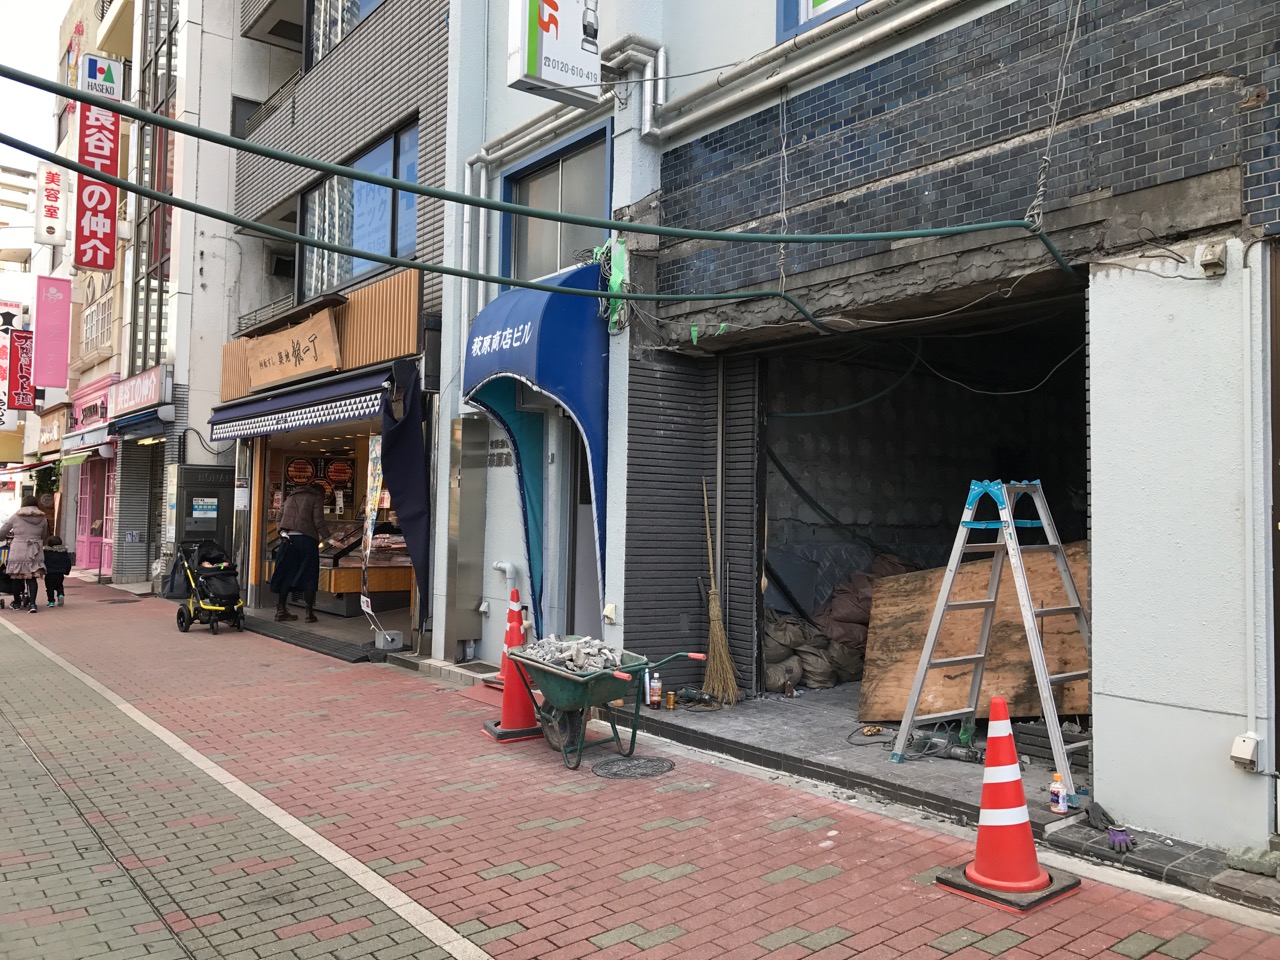 【閉店】寿司のみ処「豊洲 竹ちゃん」が閉店し、店舗が解体されてた